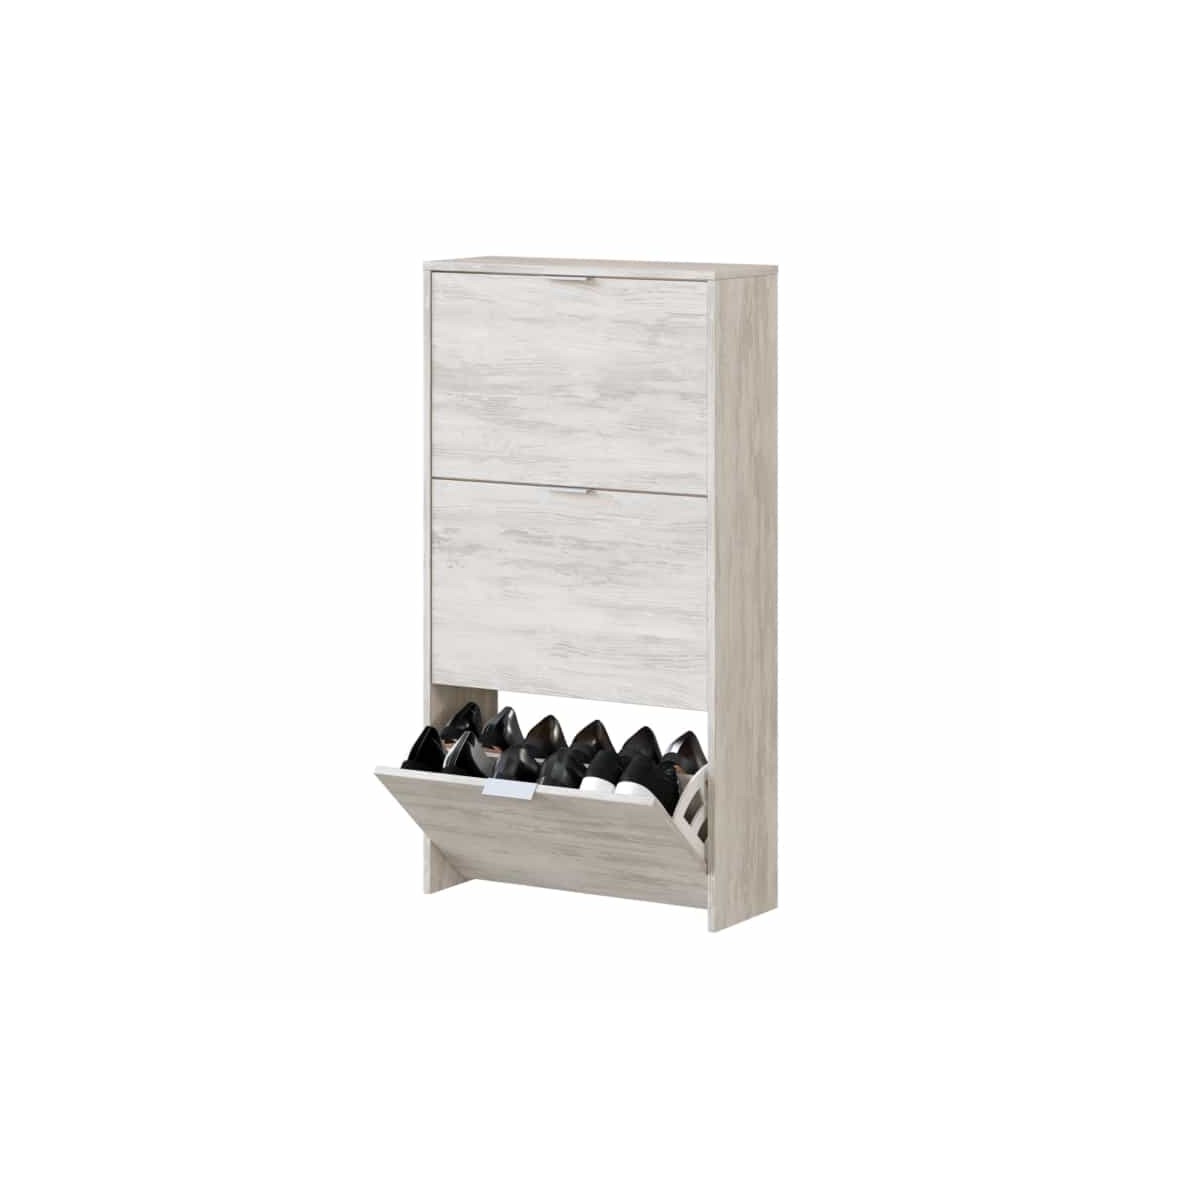 Casier 4 rangements gris en bois, eco-design et fonctionnel